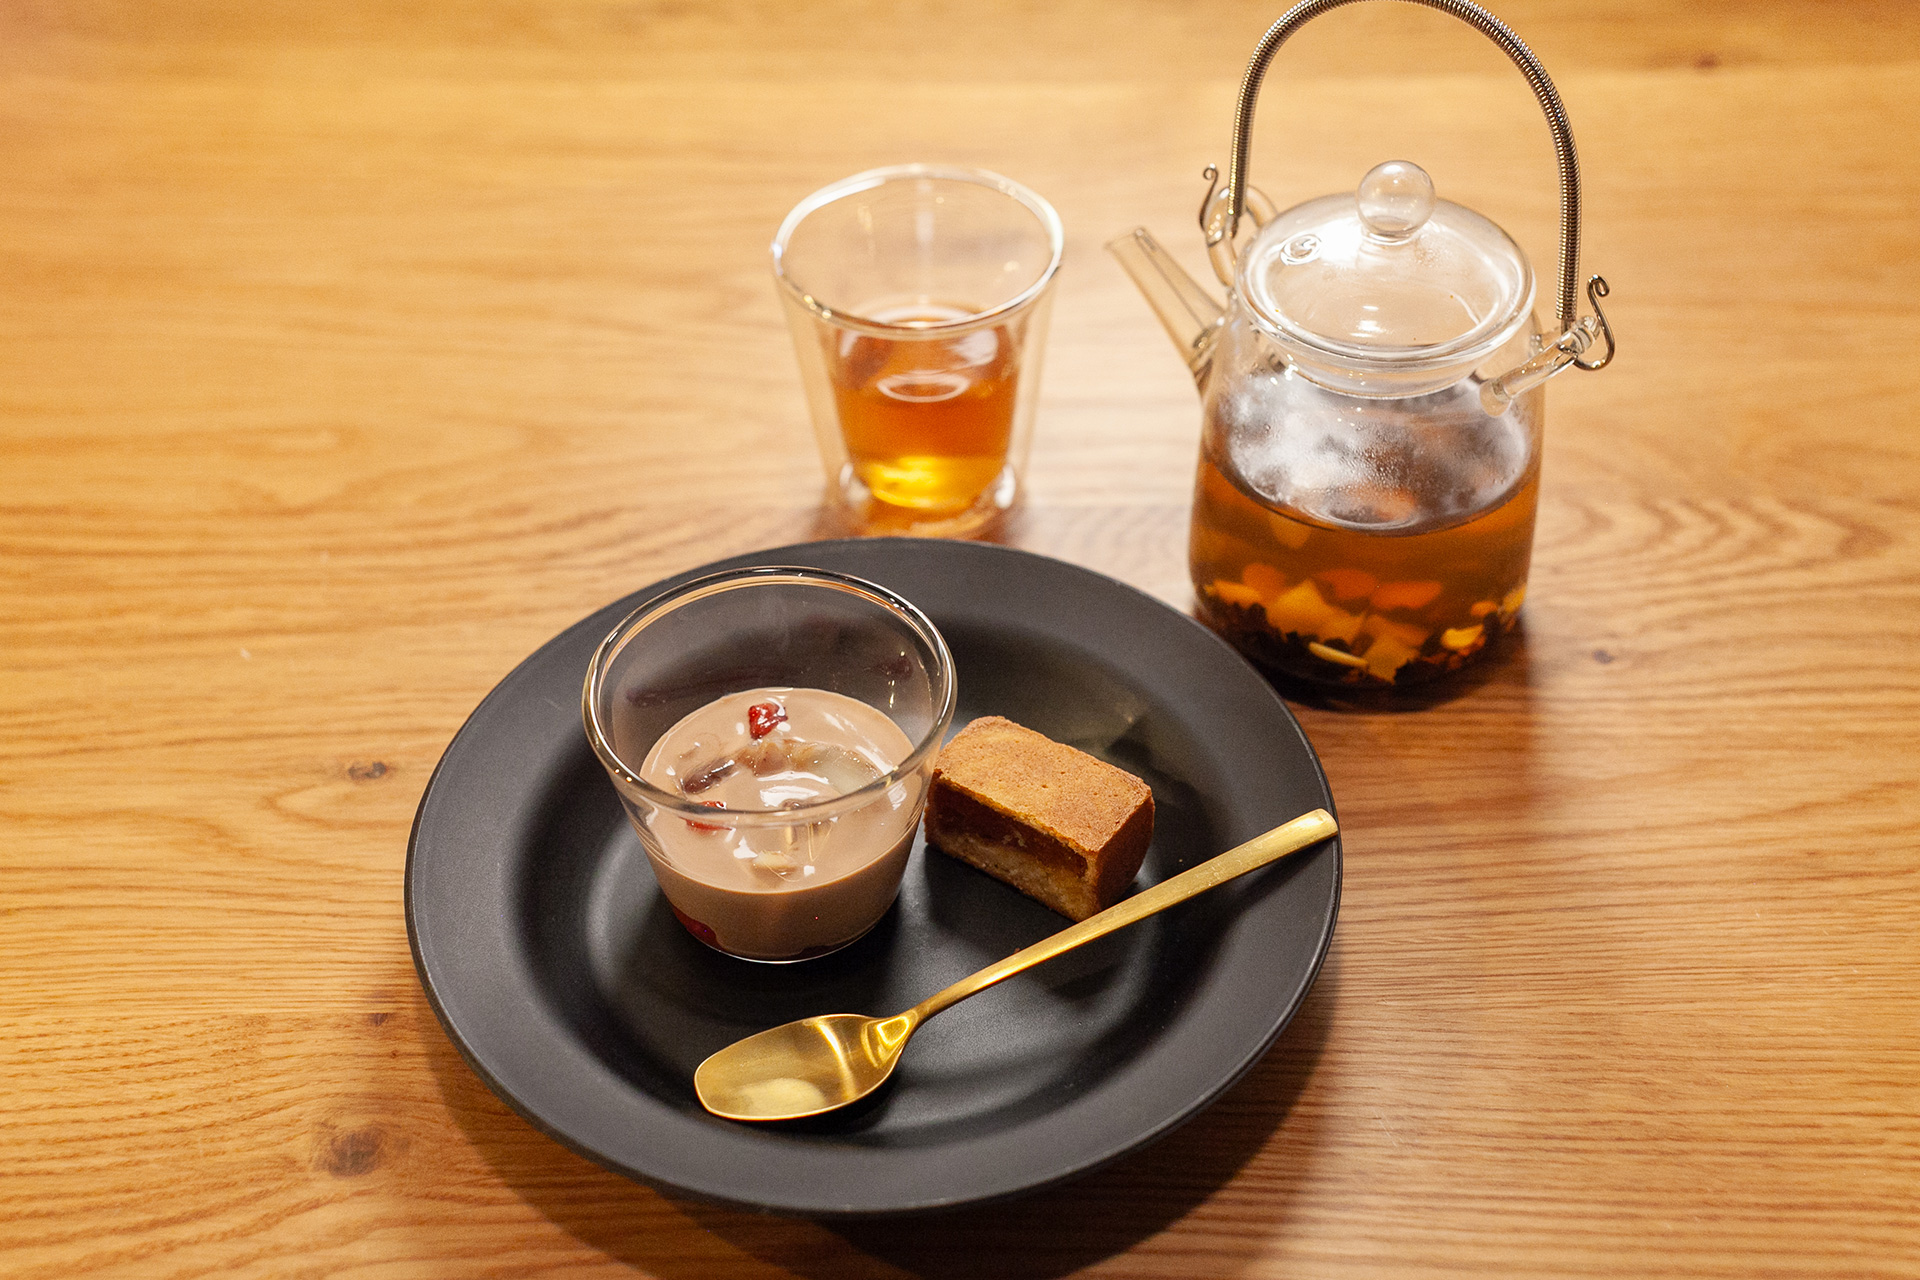 11月9日(木)からモダンアジアンレストラン HENGEN (ヘンゲン) が、立冬に合わせた新ランチメニューを提供開始。のサブ画像5_秋のブレンド茶とデザート